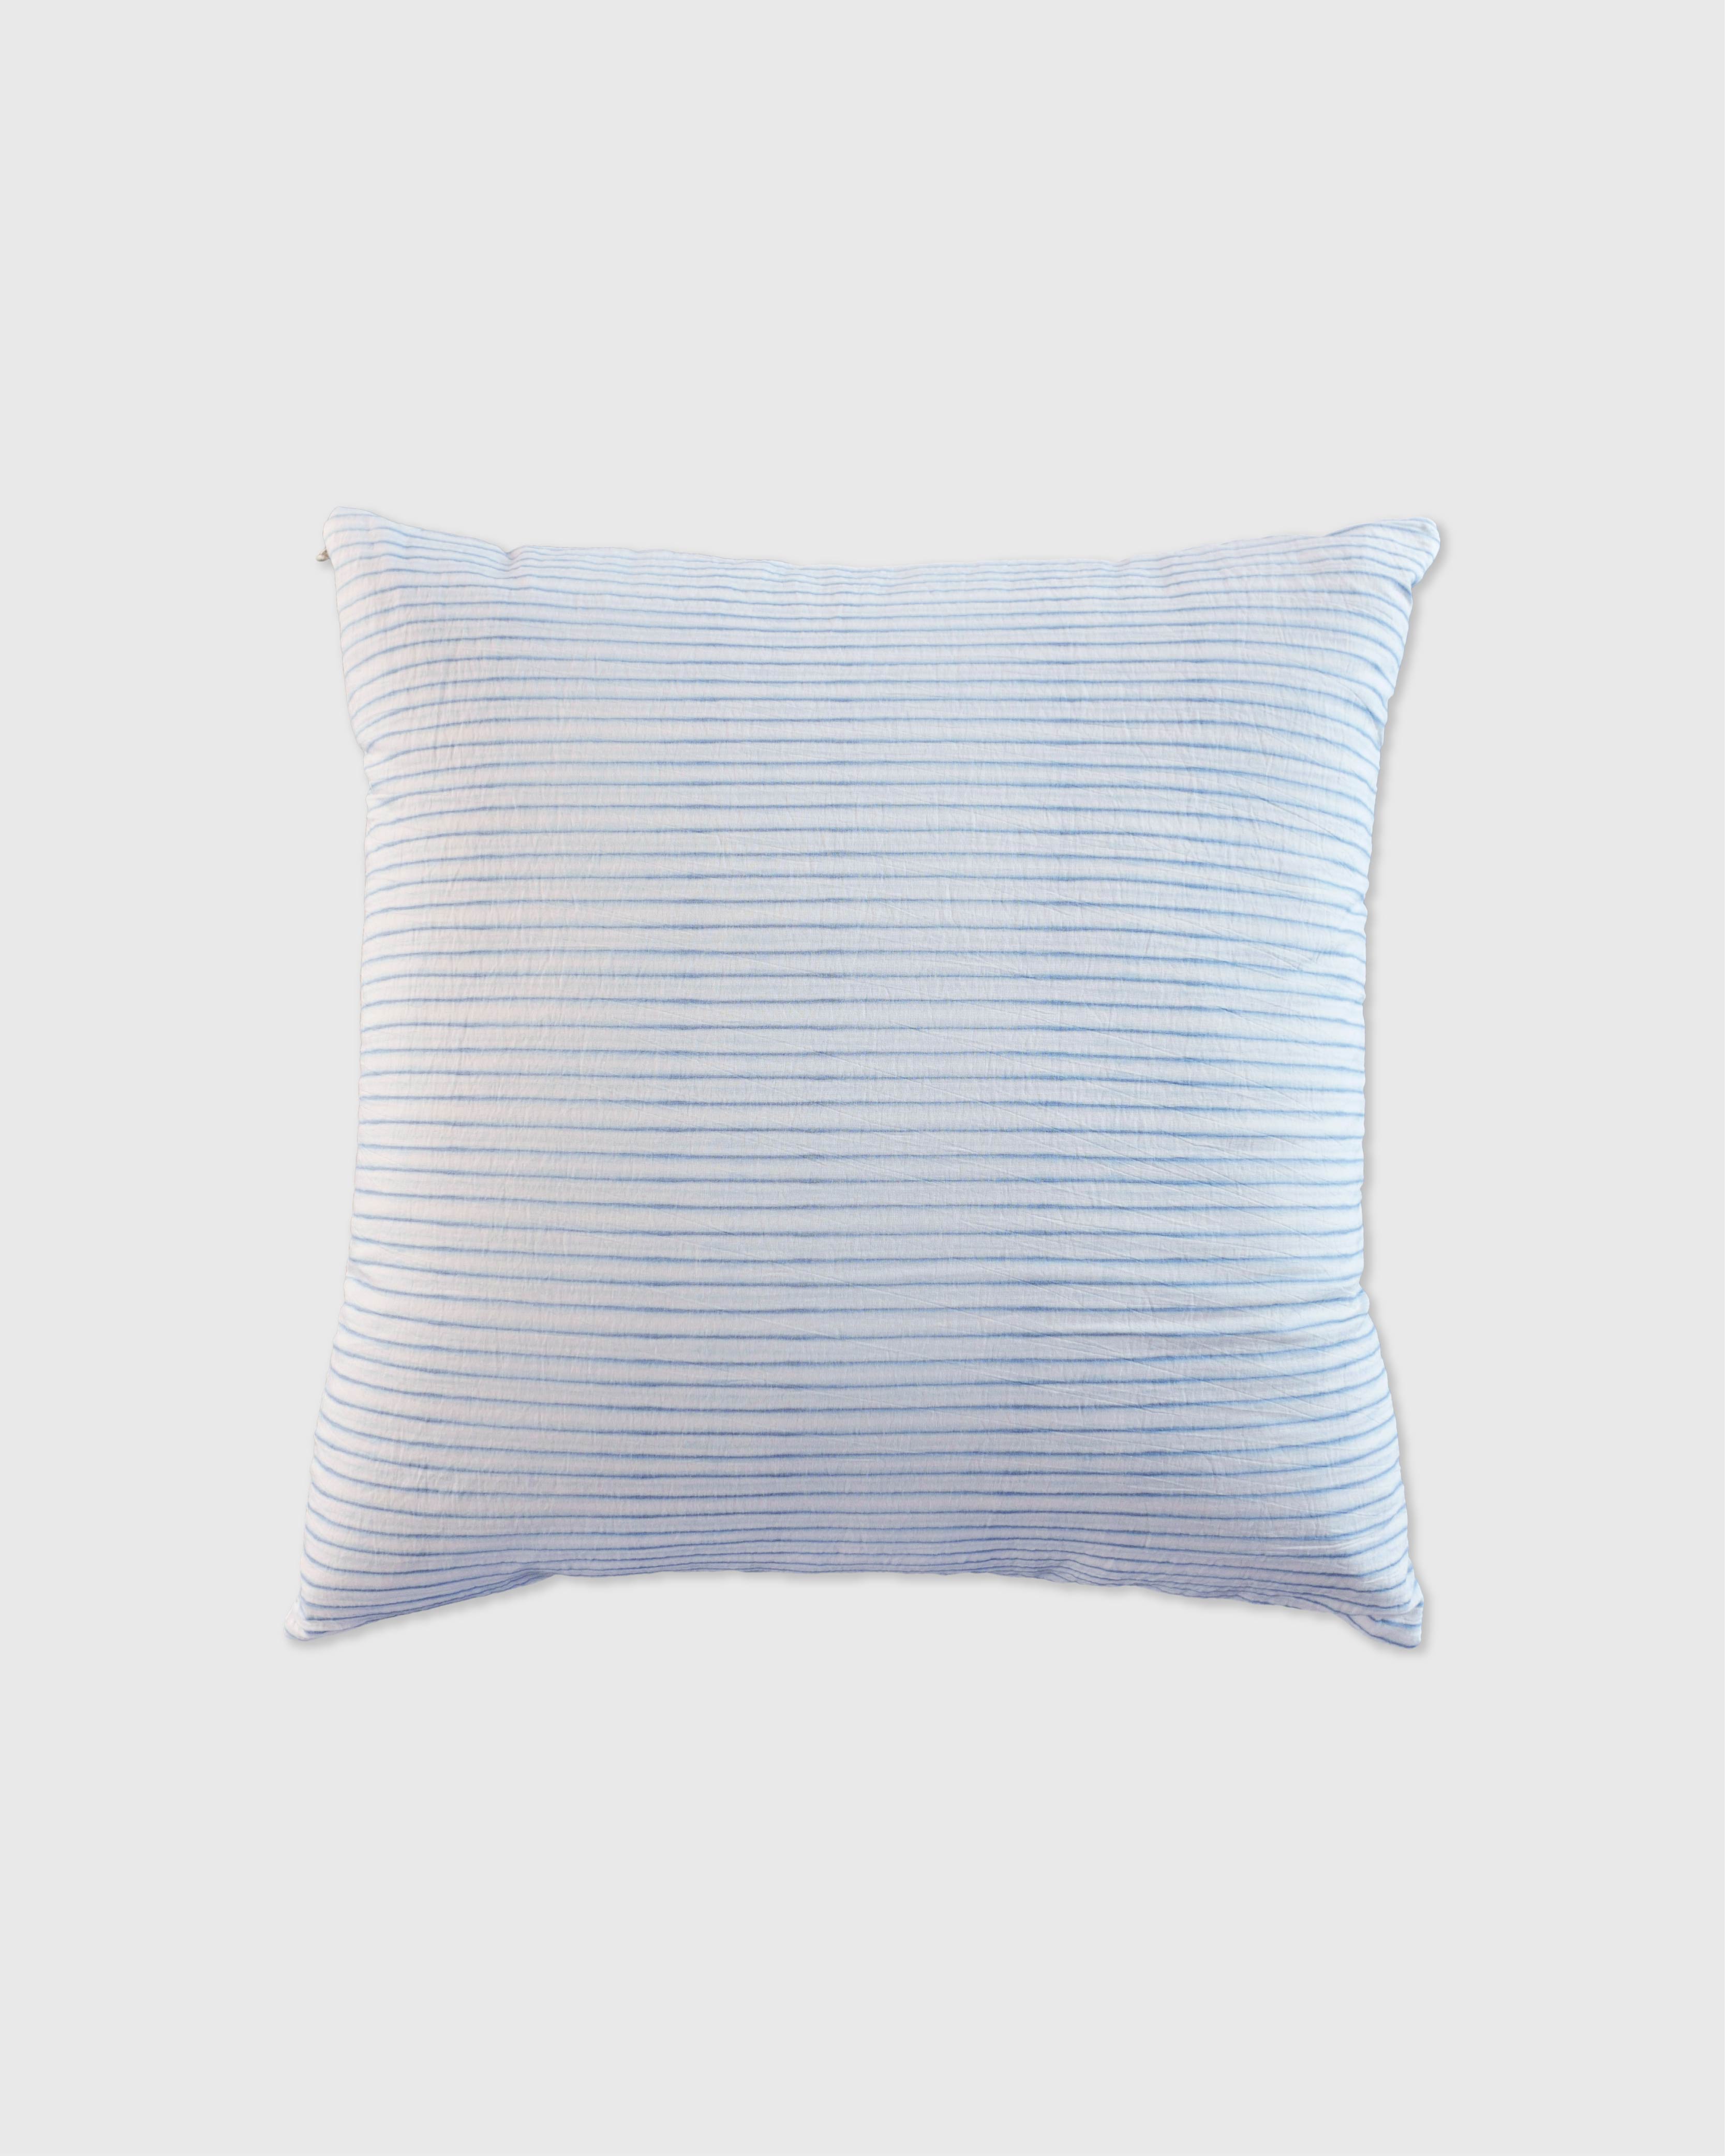 언폴드,unfold,에코백,파우치,천가방,코스터,백팩,스크런치Stripe cushion cover (white-blue)